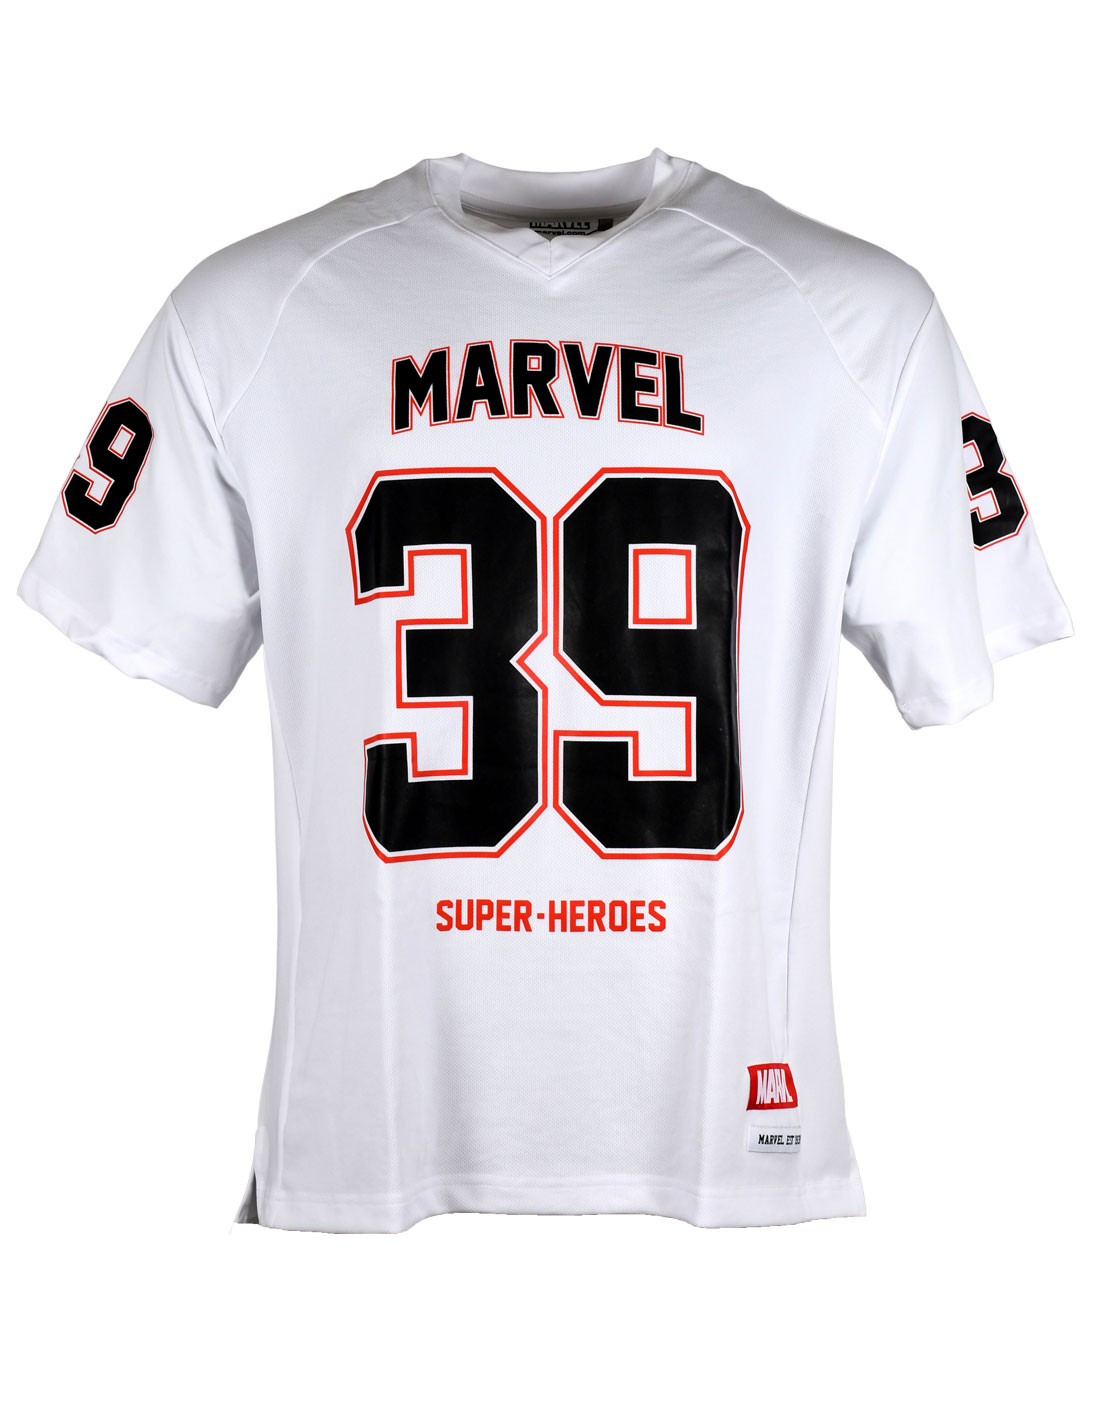 Marvel - Camiseta Premium Super Sport | Universo Planeta de cómics/mangas, juegos de mesa y el coleccionismo.